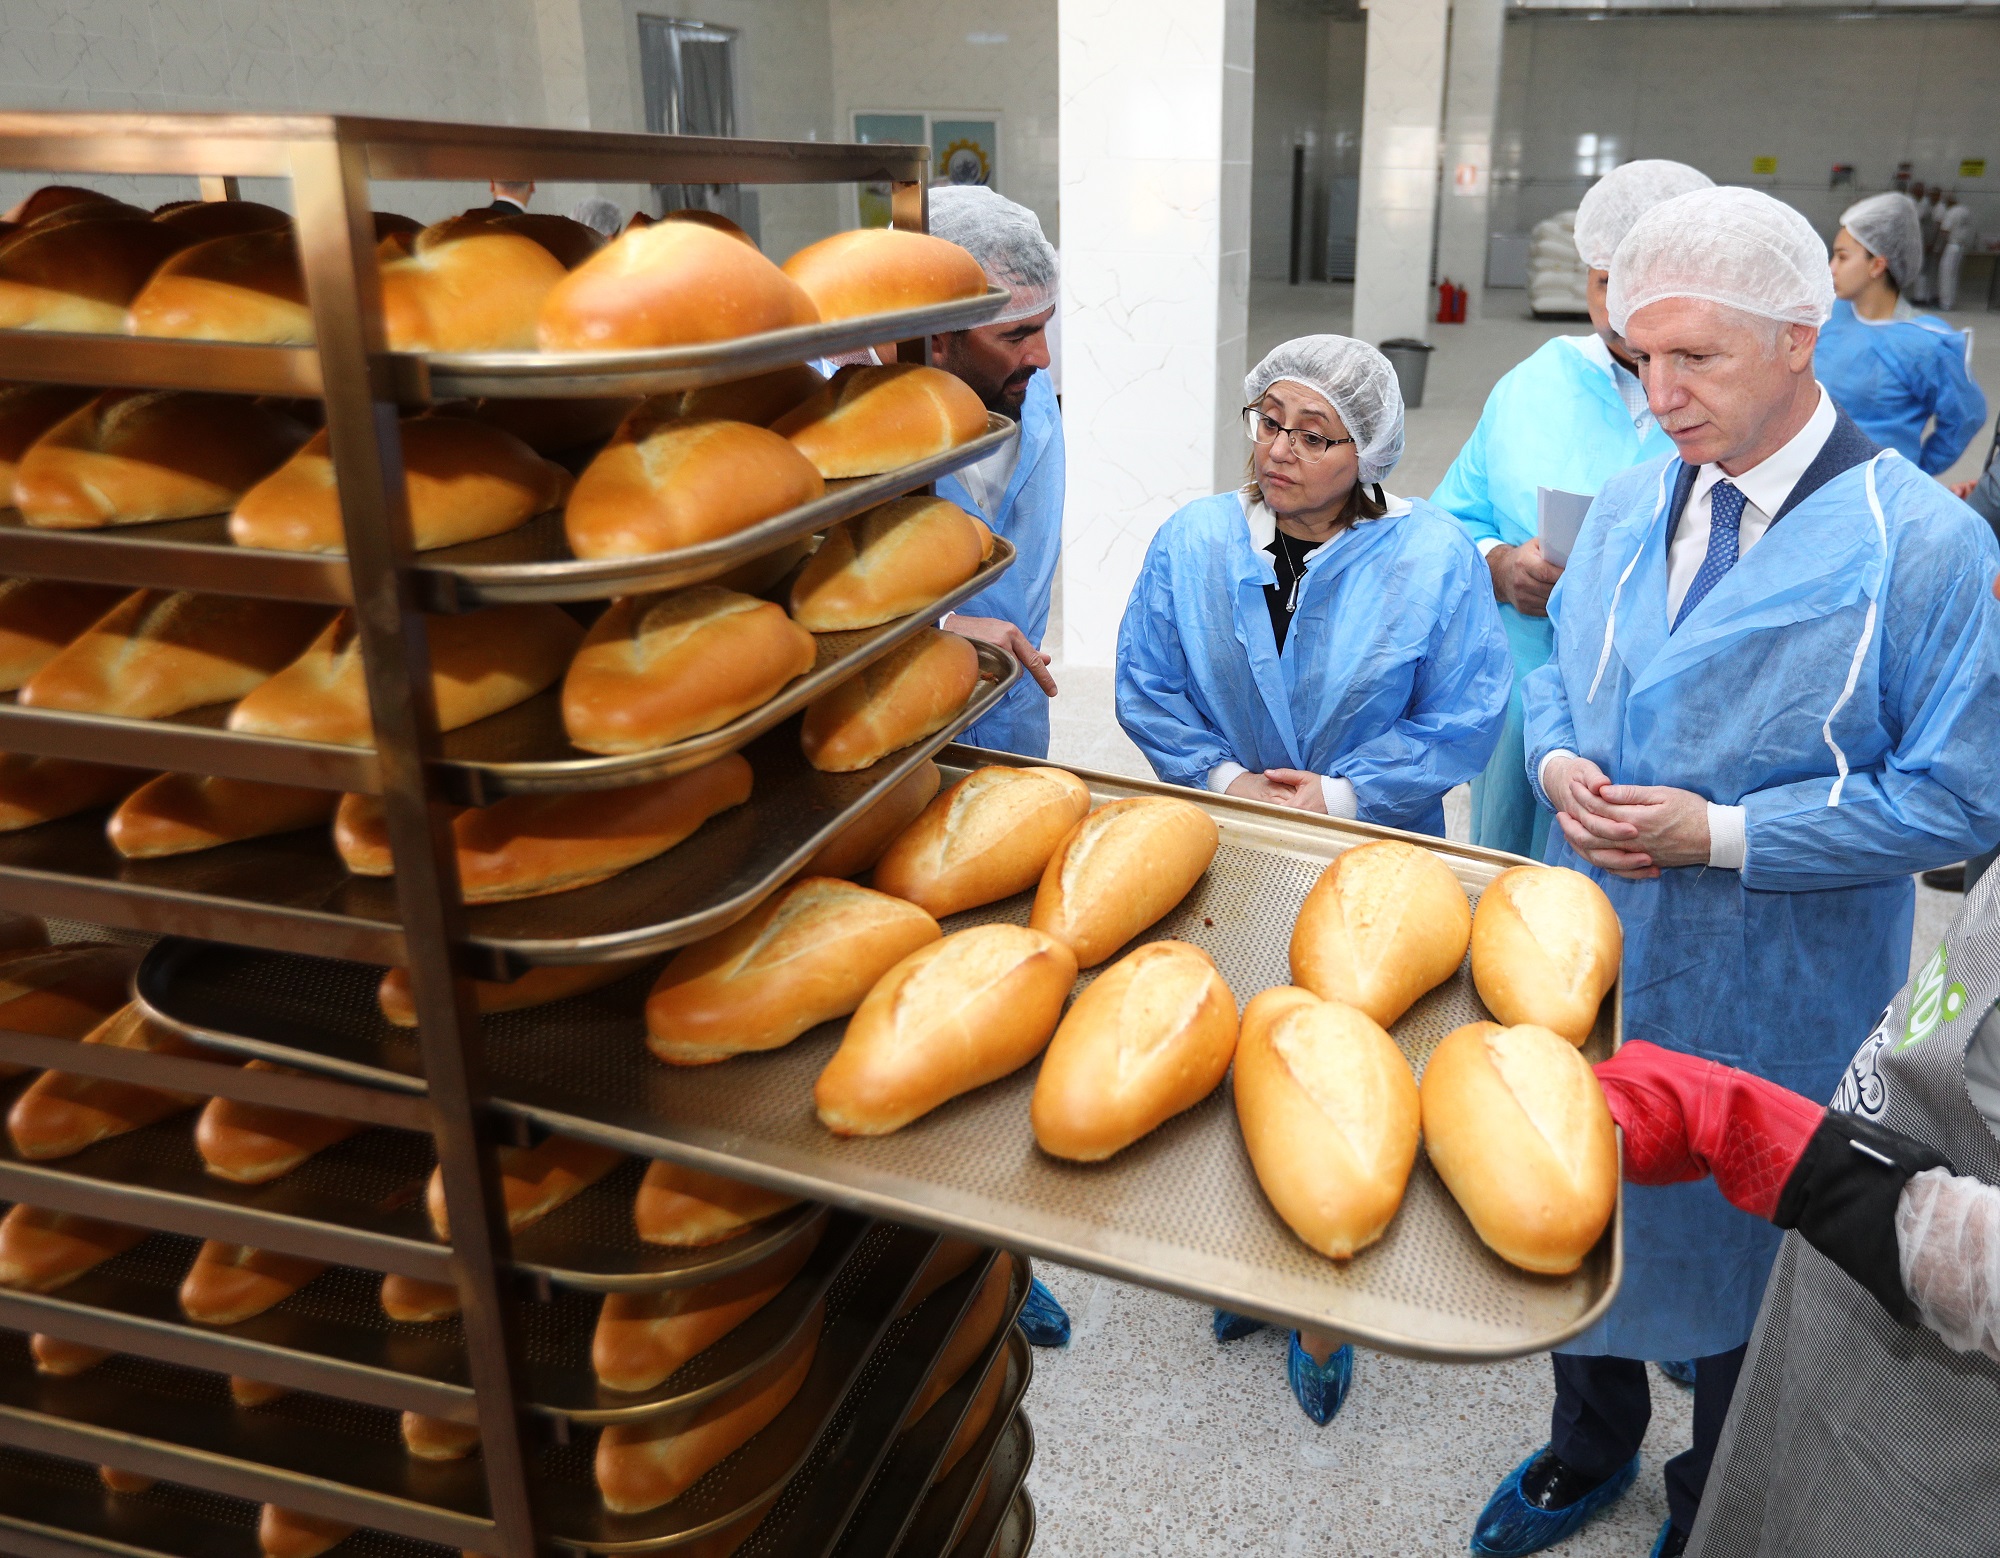 Büyükşehir Belediyesi tarafından hizmet veren “Haydi” Ekmek büfelerinin sayısı artırıldı